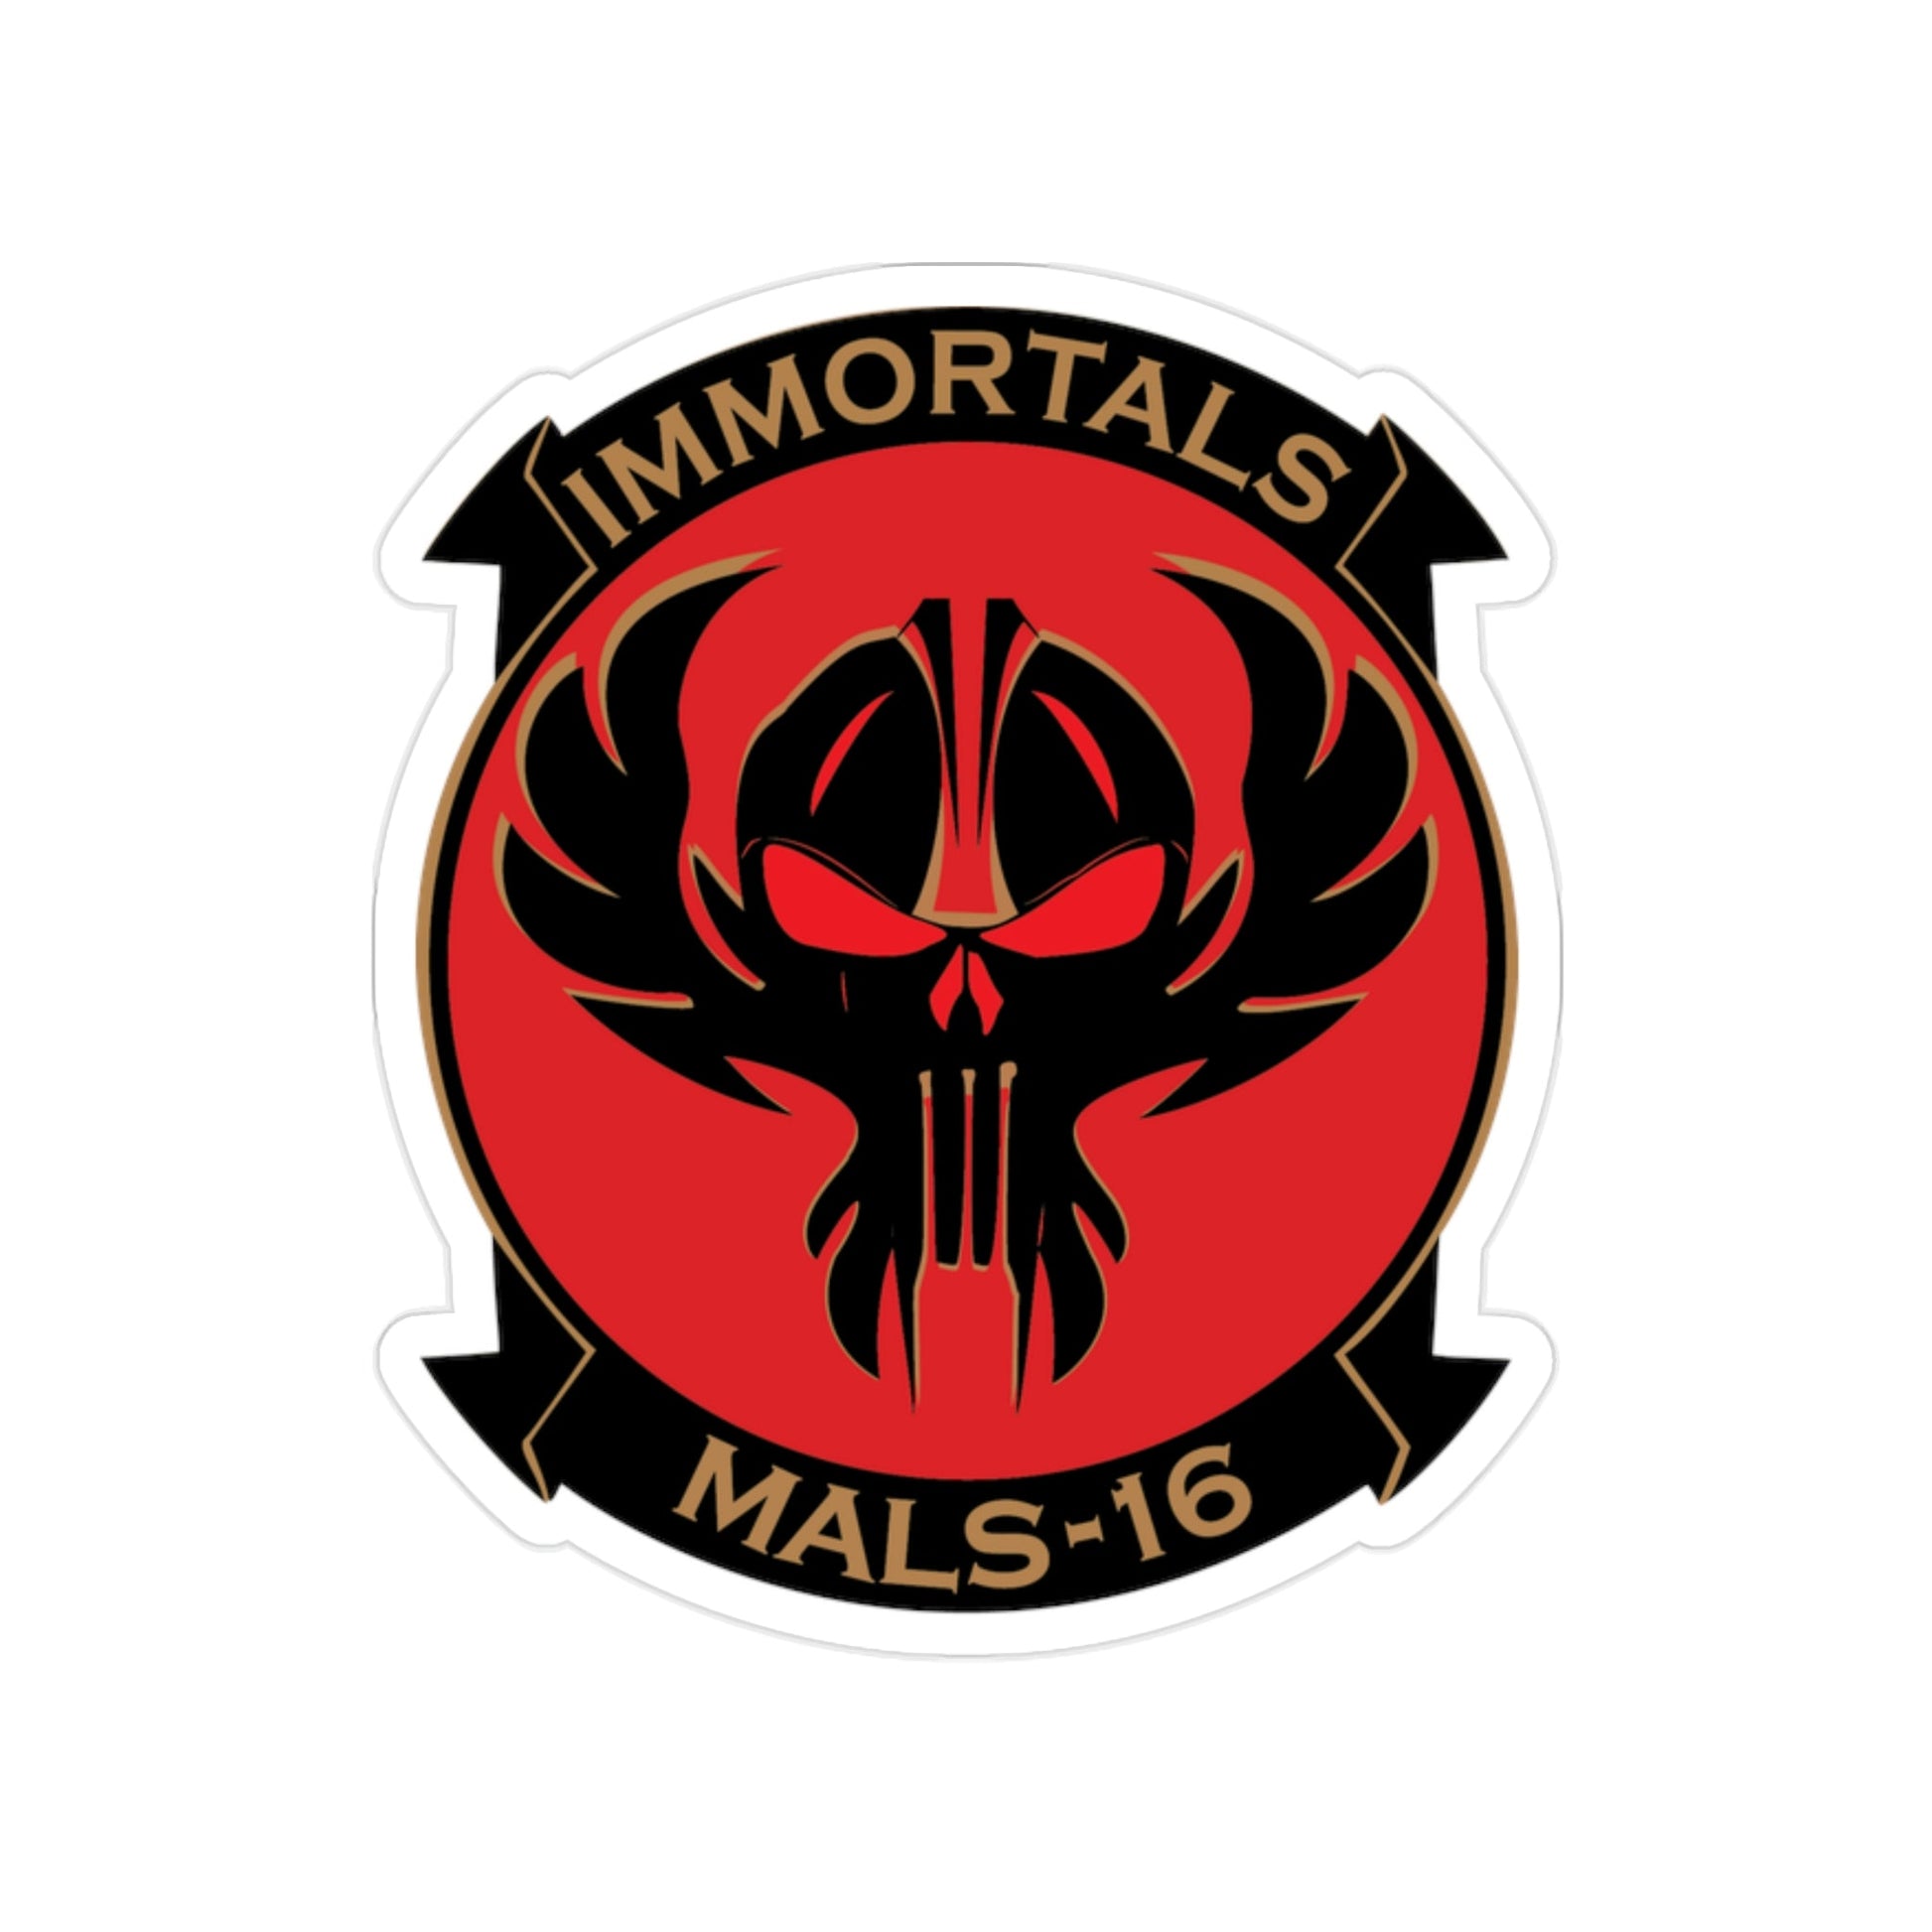 MALS 16 Immortals (USMC) Transparent STICKER Die-Cut Vinyl Decal-2 Inch-The Sticker Space